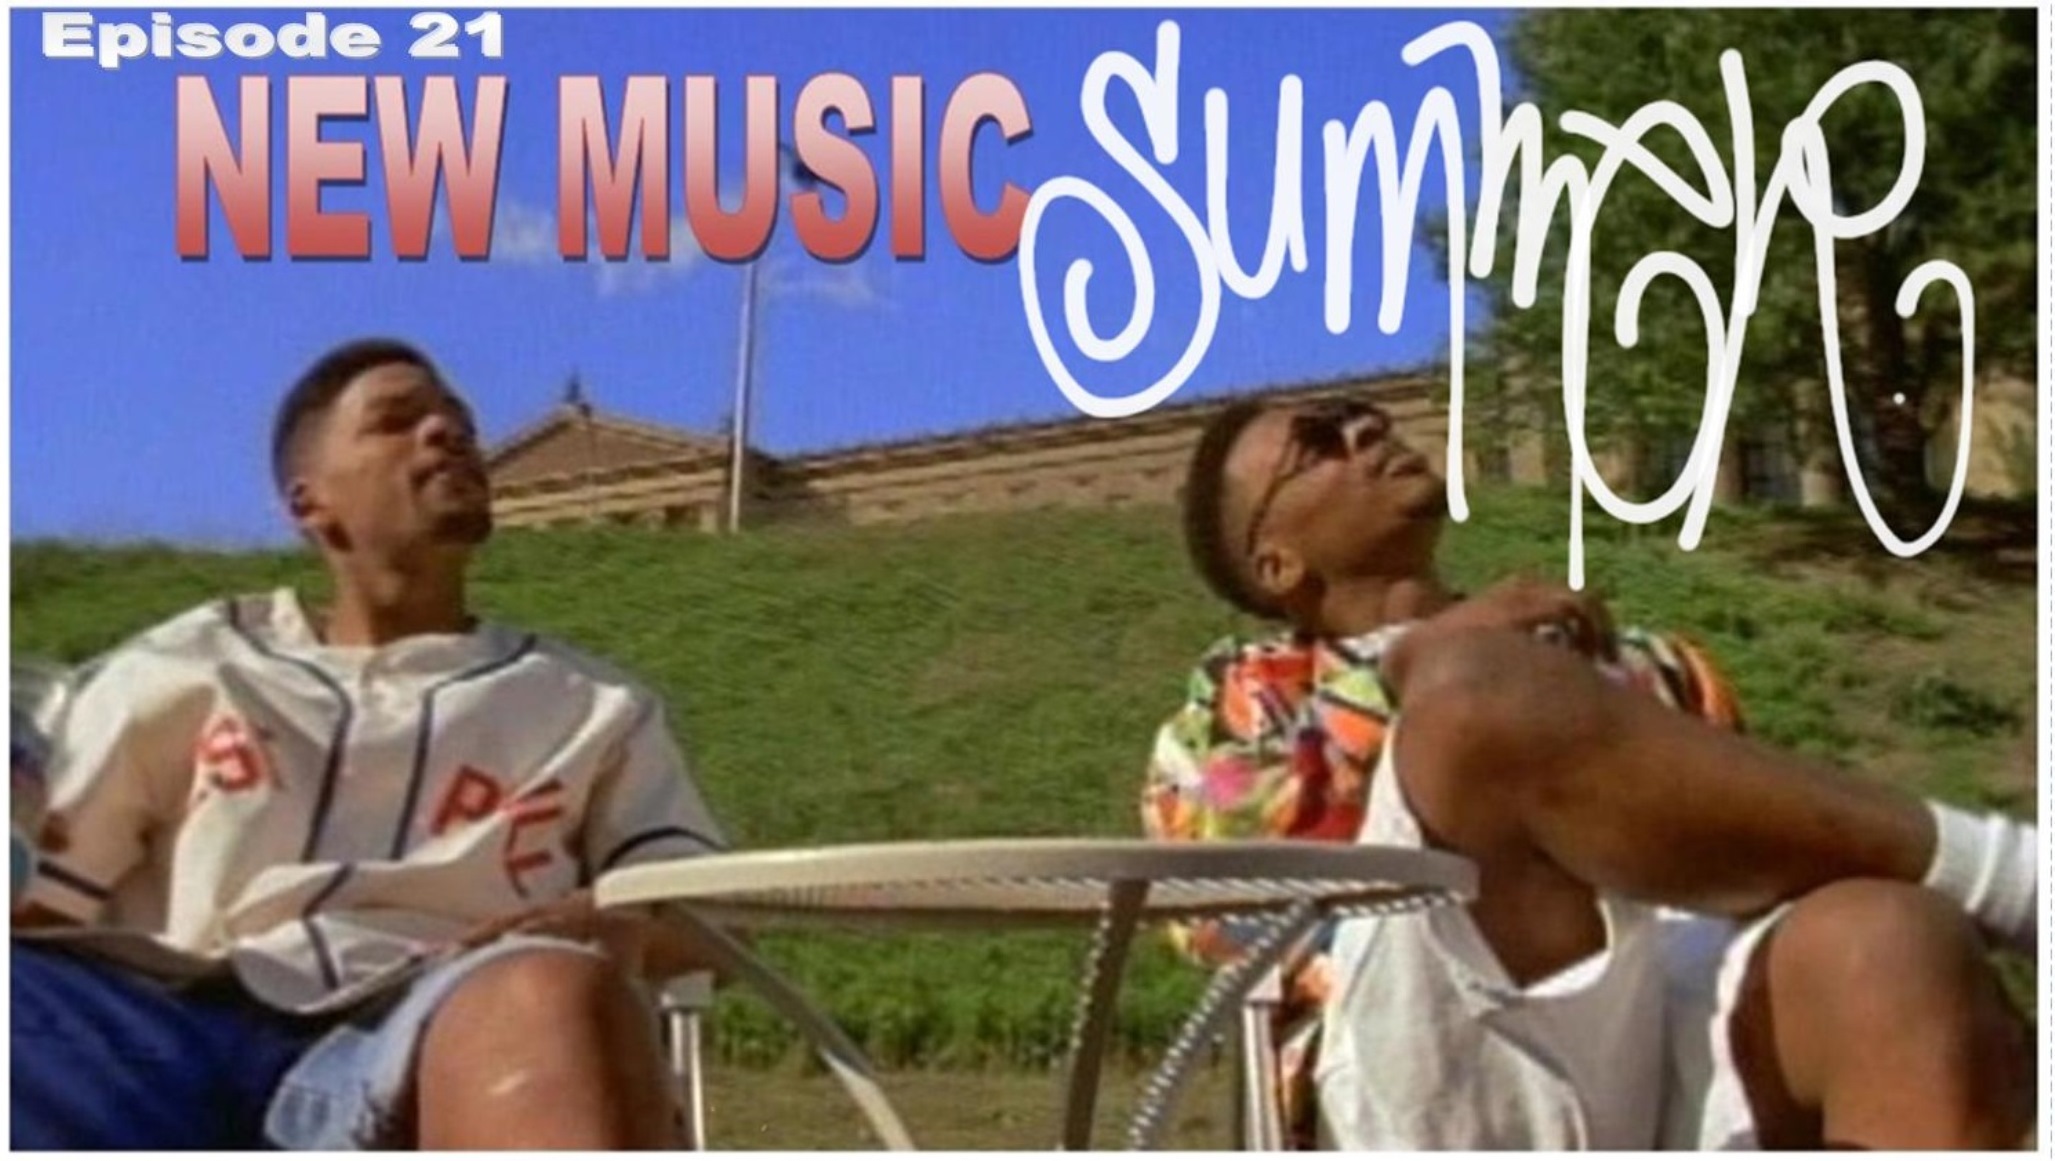 Episode 21: New Music Summer 